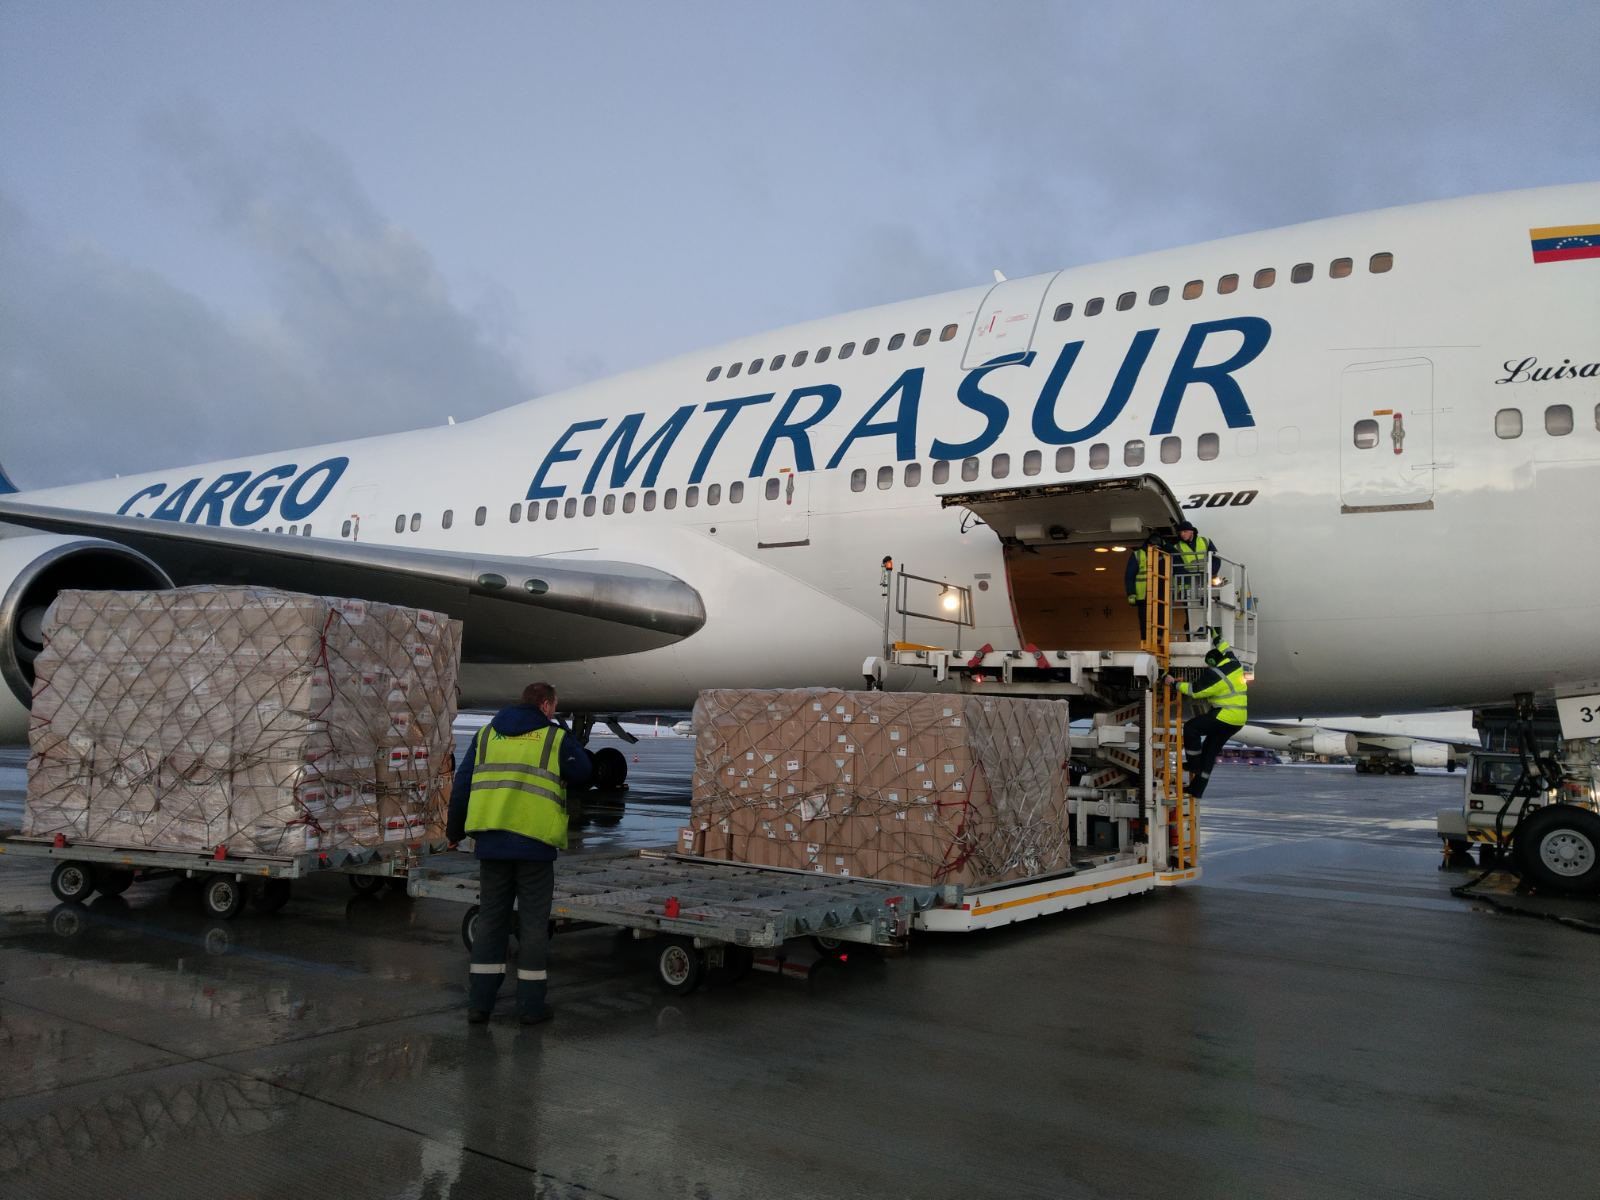 Emtrasur's Boeing 747 loading some cargo. 